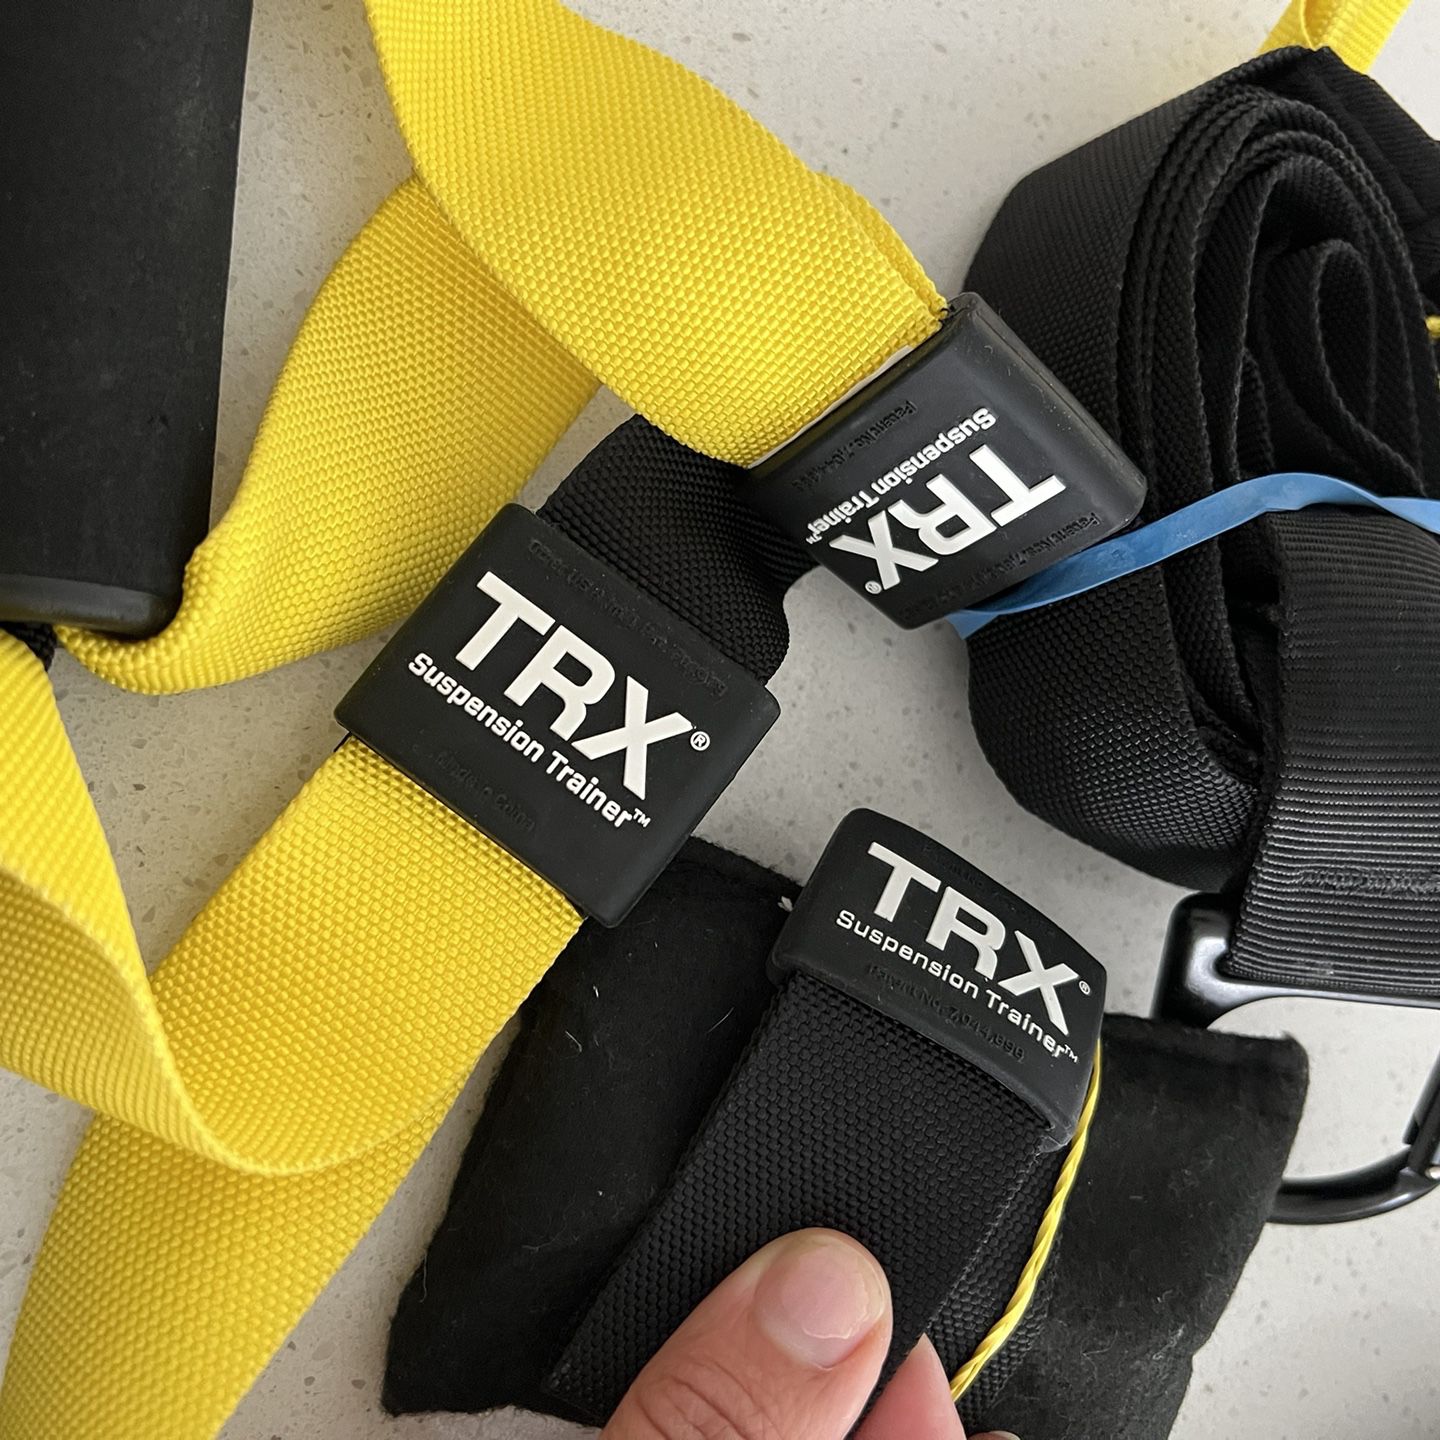 TRX Suspension training